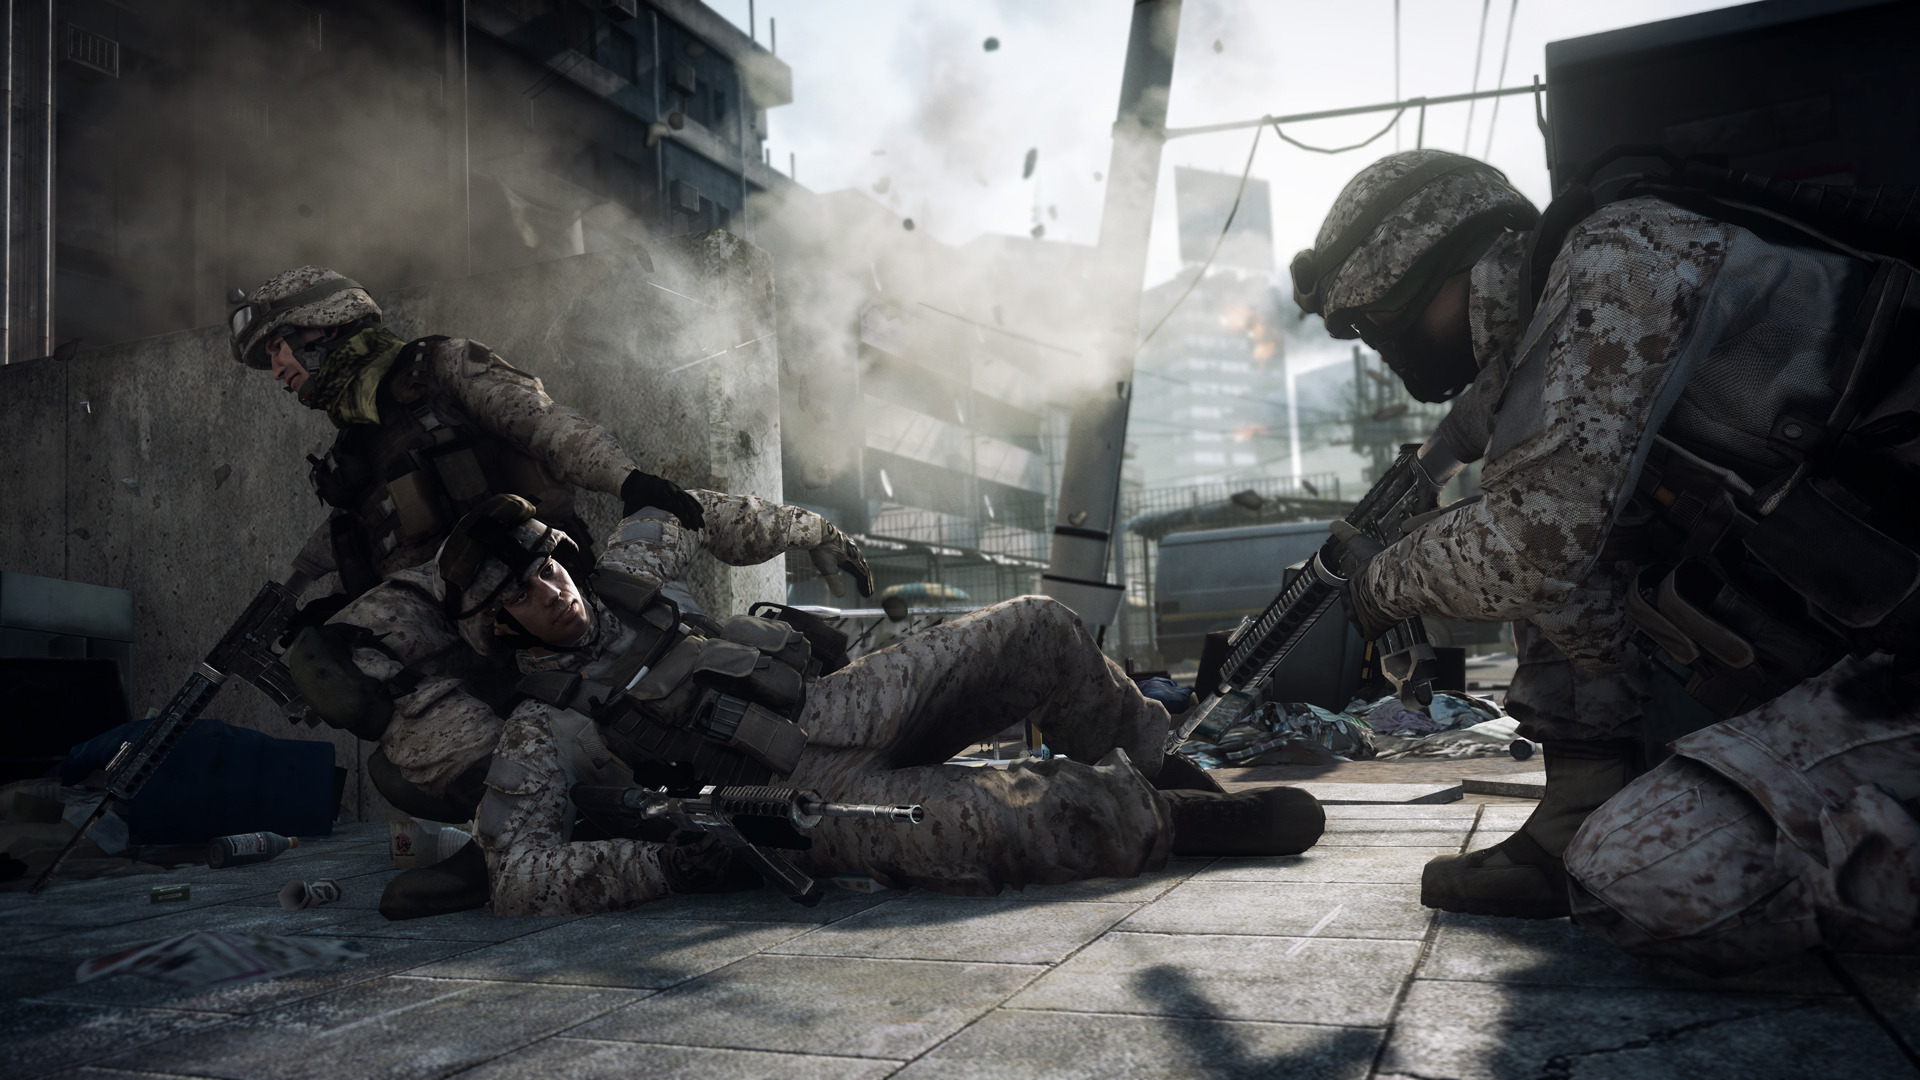 3d обои Американские солдаты в игре Battlefield 3 (Бэтлфилд 3) тащат раненного  дым # 36116